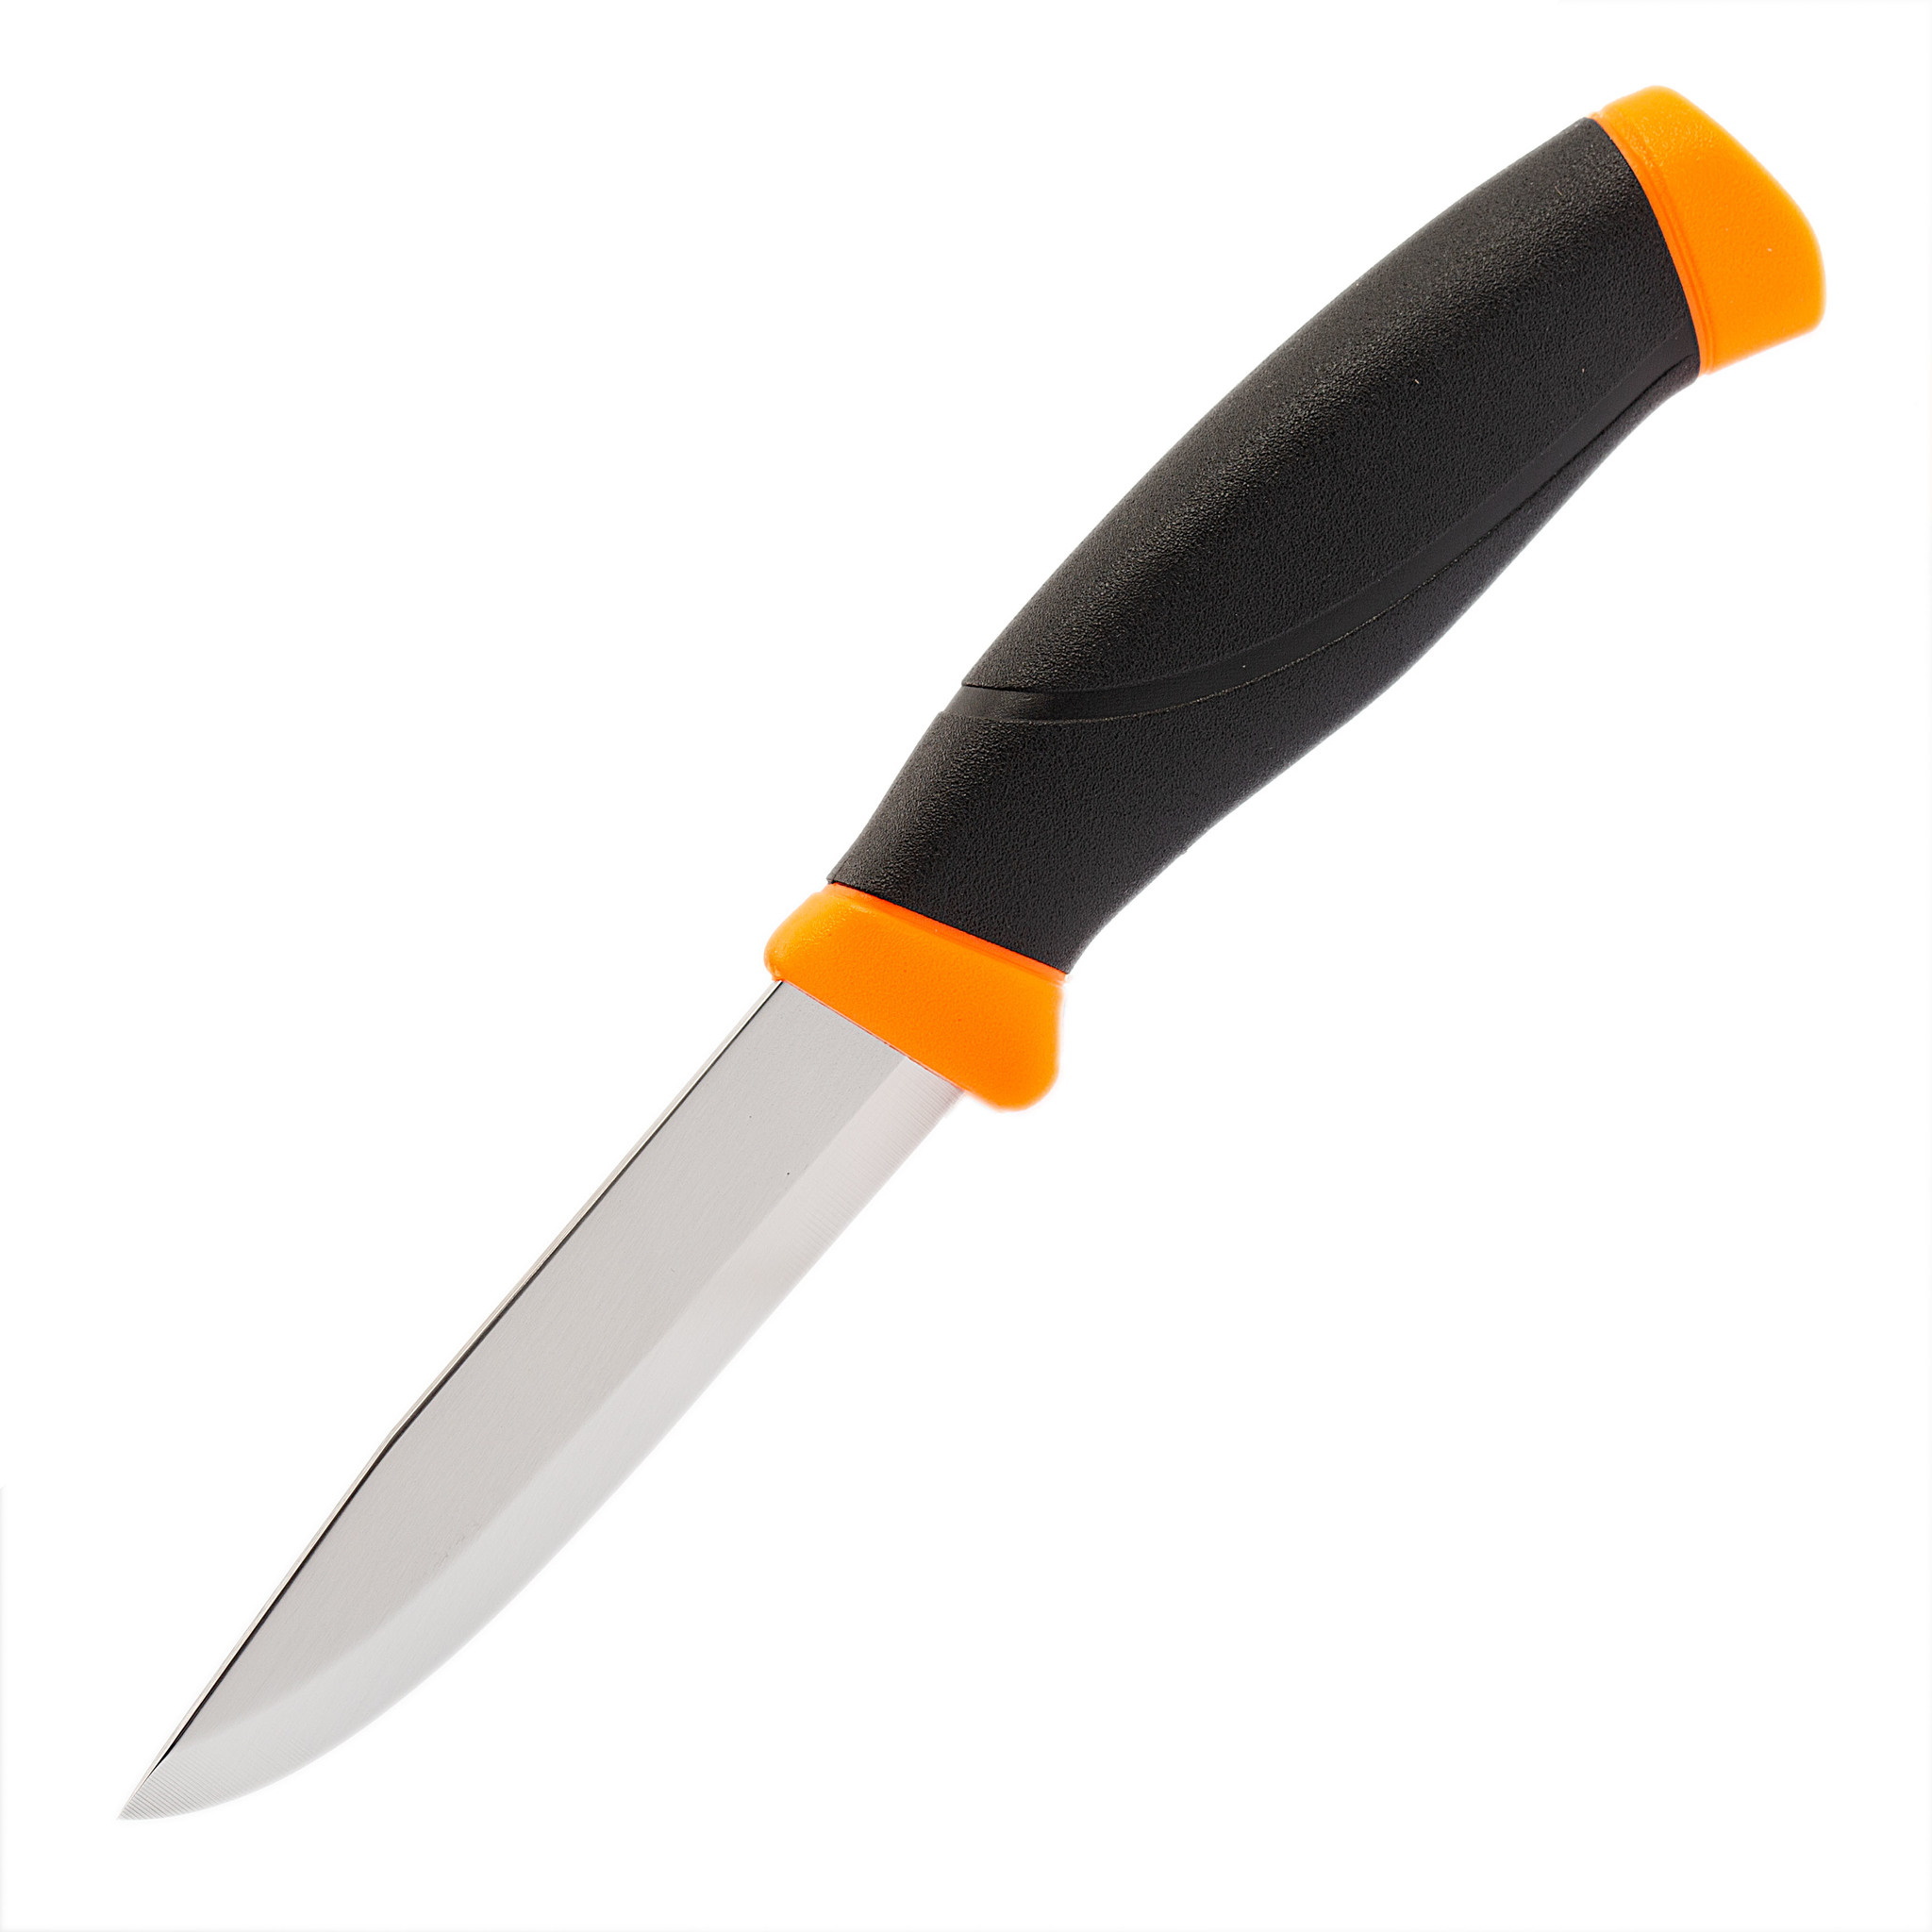 Нож с фиксированным лезвием Morakniv Companion Orange, сталь Sandvik 12C27, рукоять резина/пластик, оранжевый - фото 1